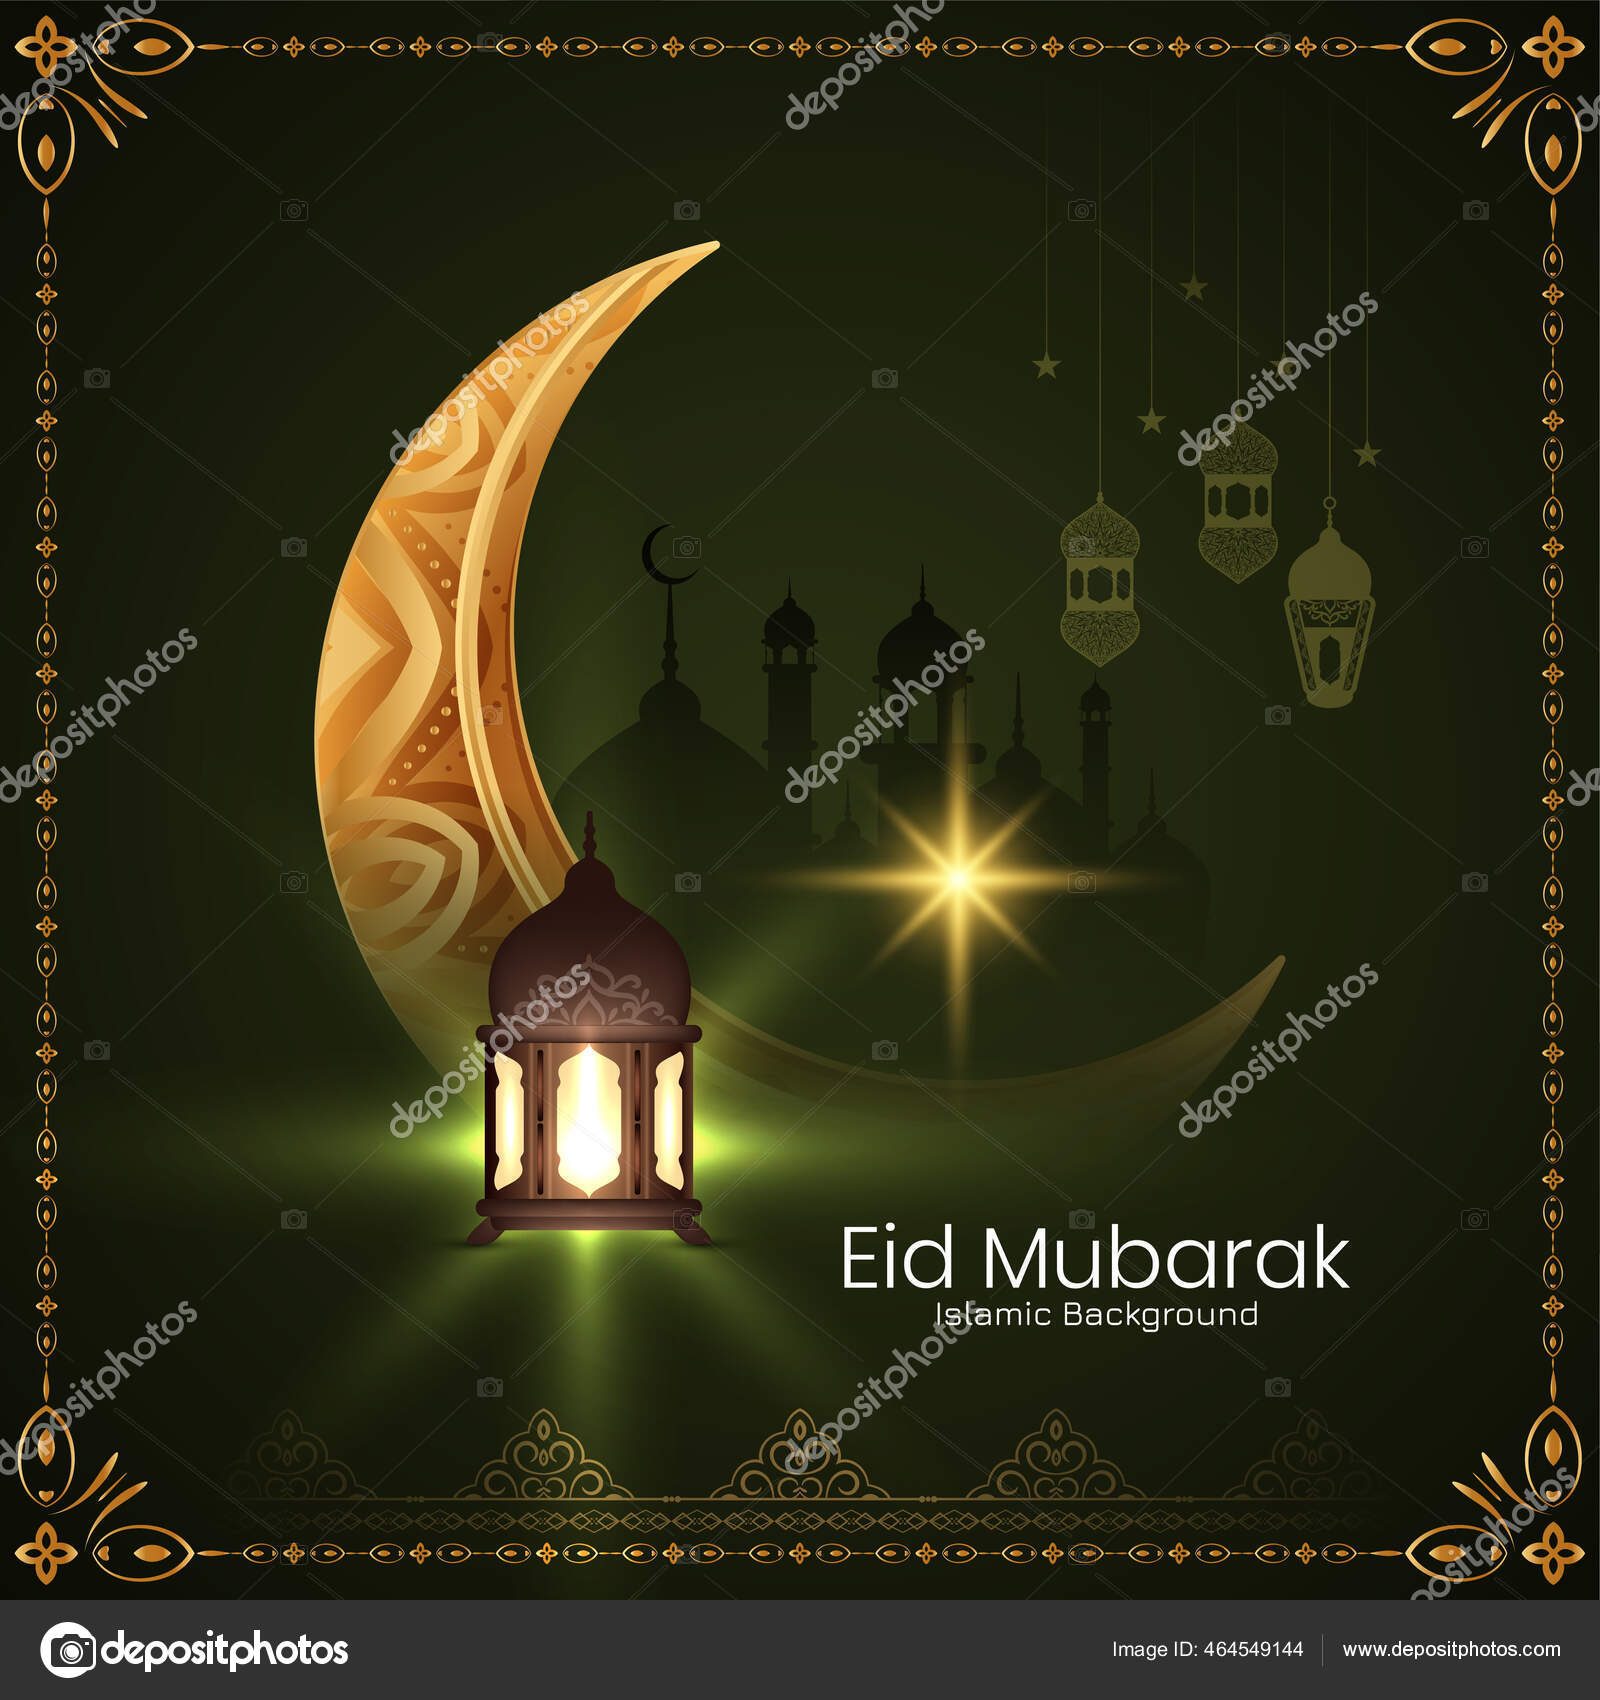 Eid milad un nabi Vector Art Stock Images | Depositphotos